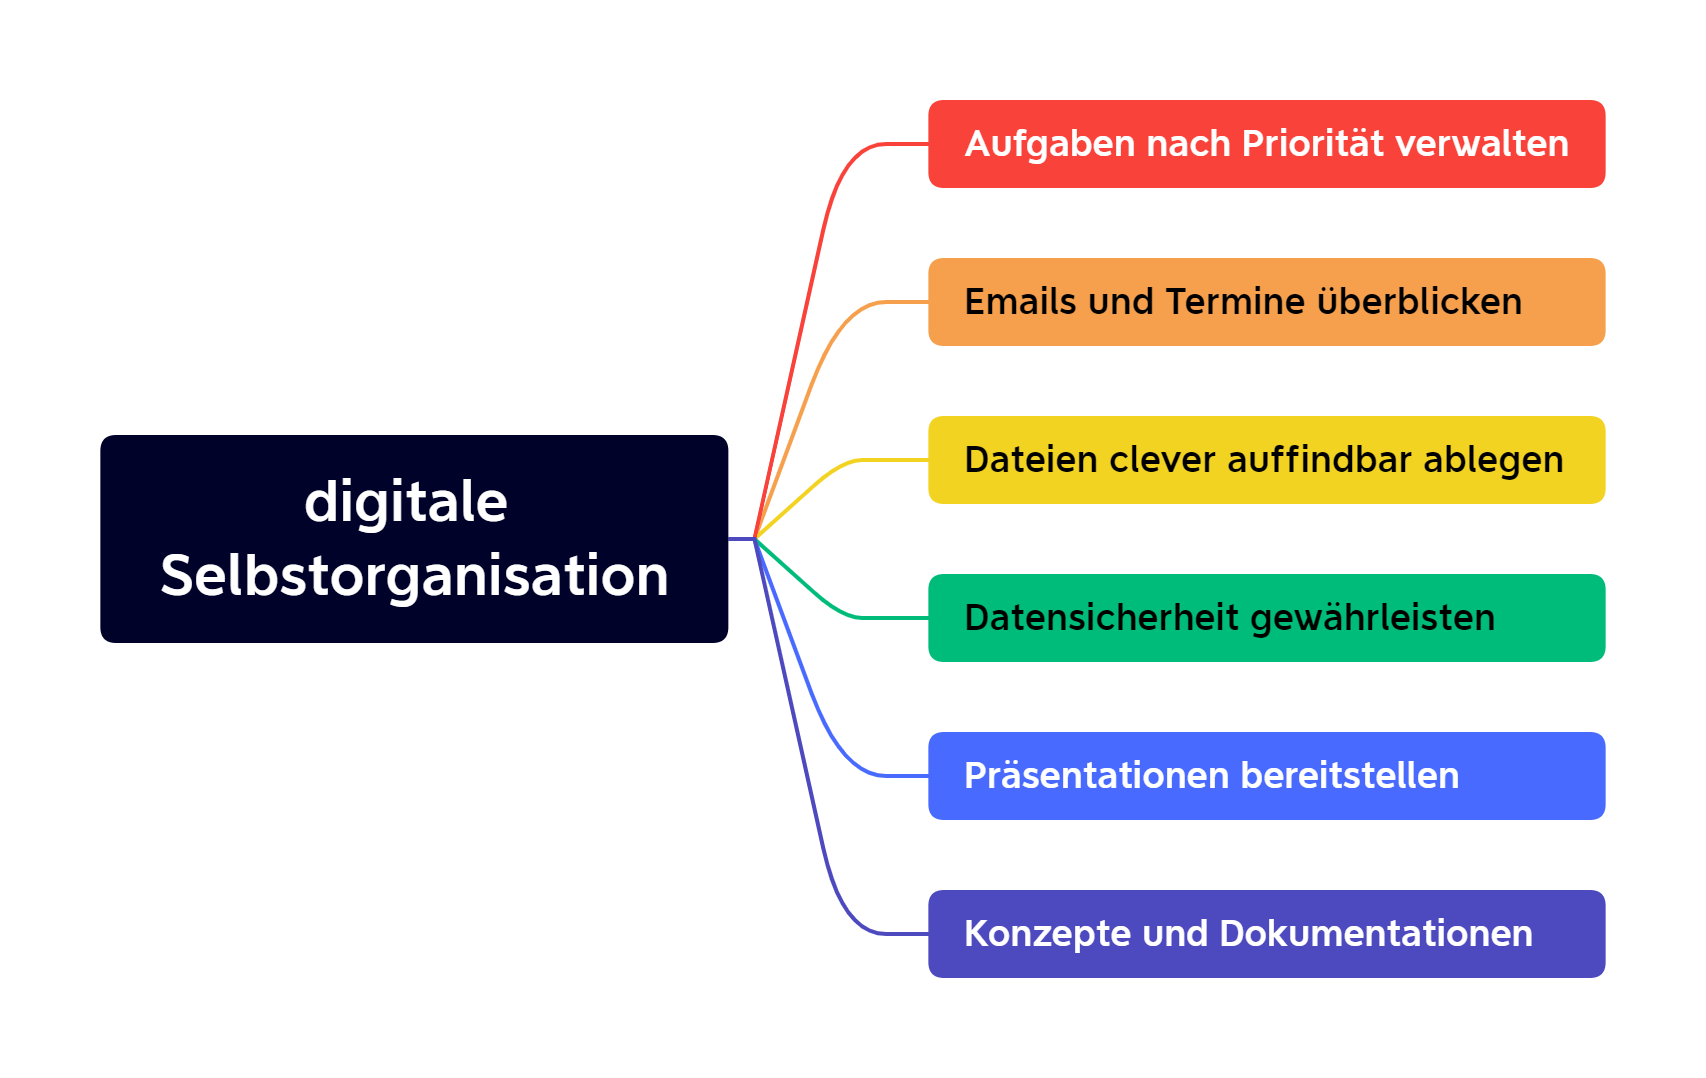 Digitale Selbstorganisation